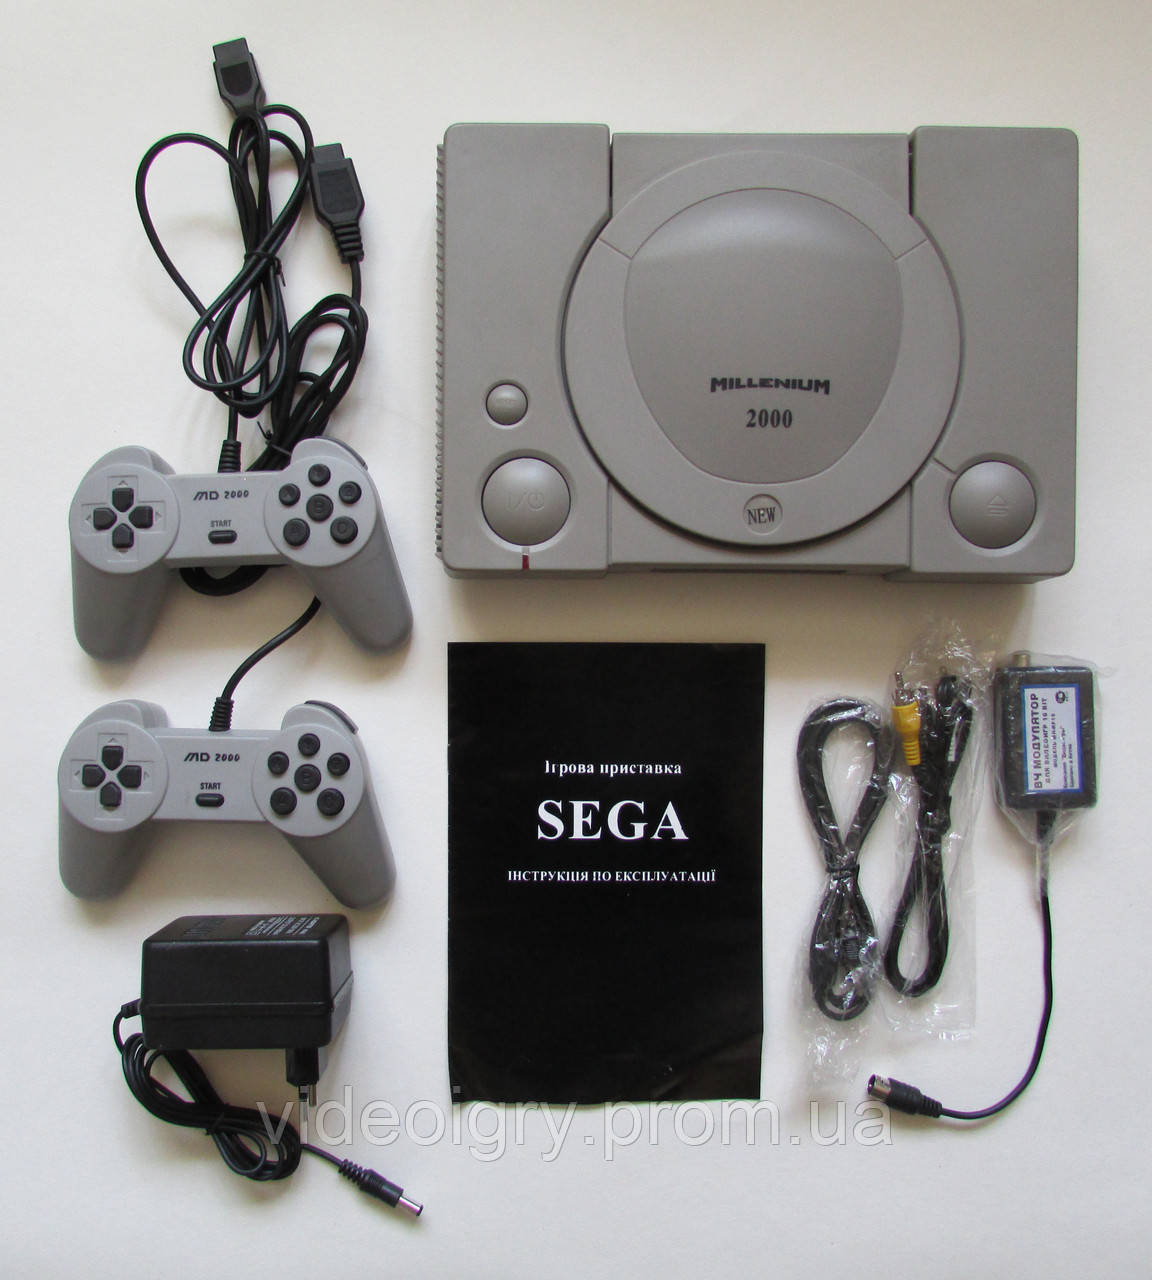 Sega Millenium 2000 16-bit (Виробництва до 2013 року)